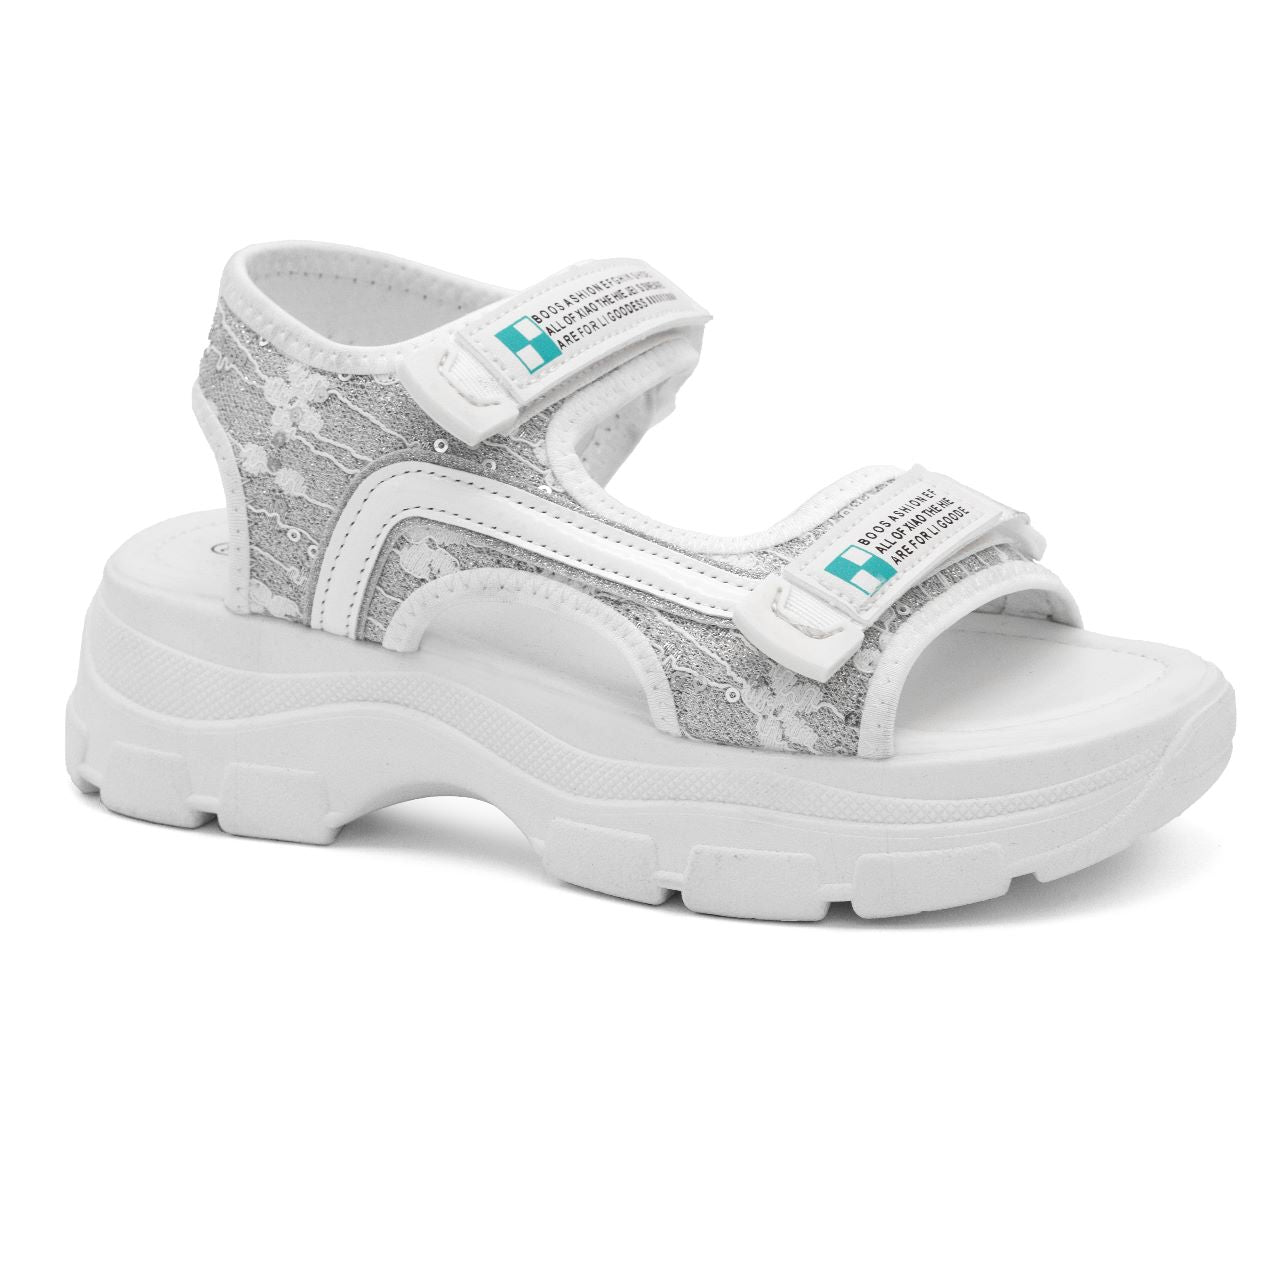 ZLXY005 sole sandal